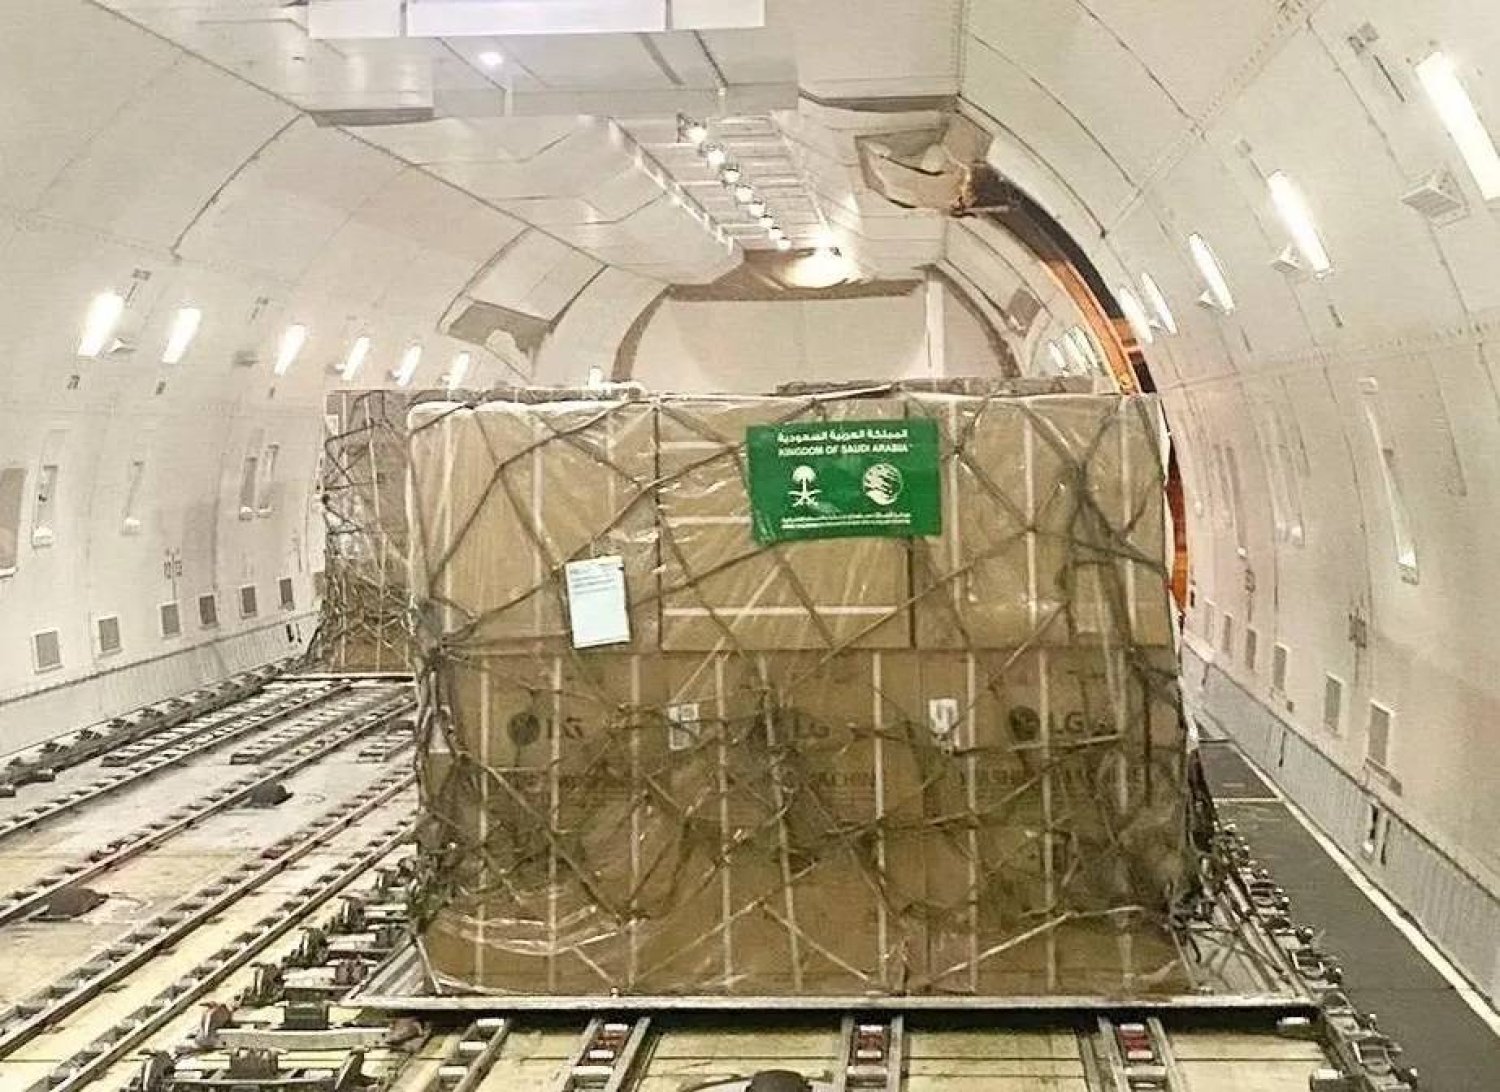 تحمل الطائرة الإغاثية السعودية مولدات وأجهزة كهربائية (واس)